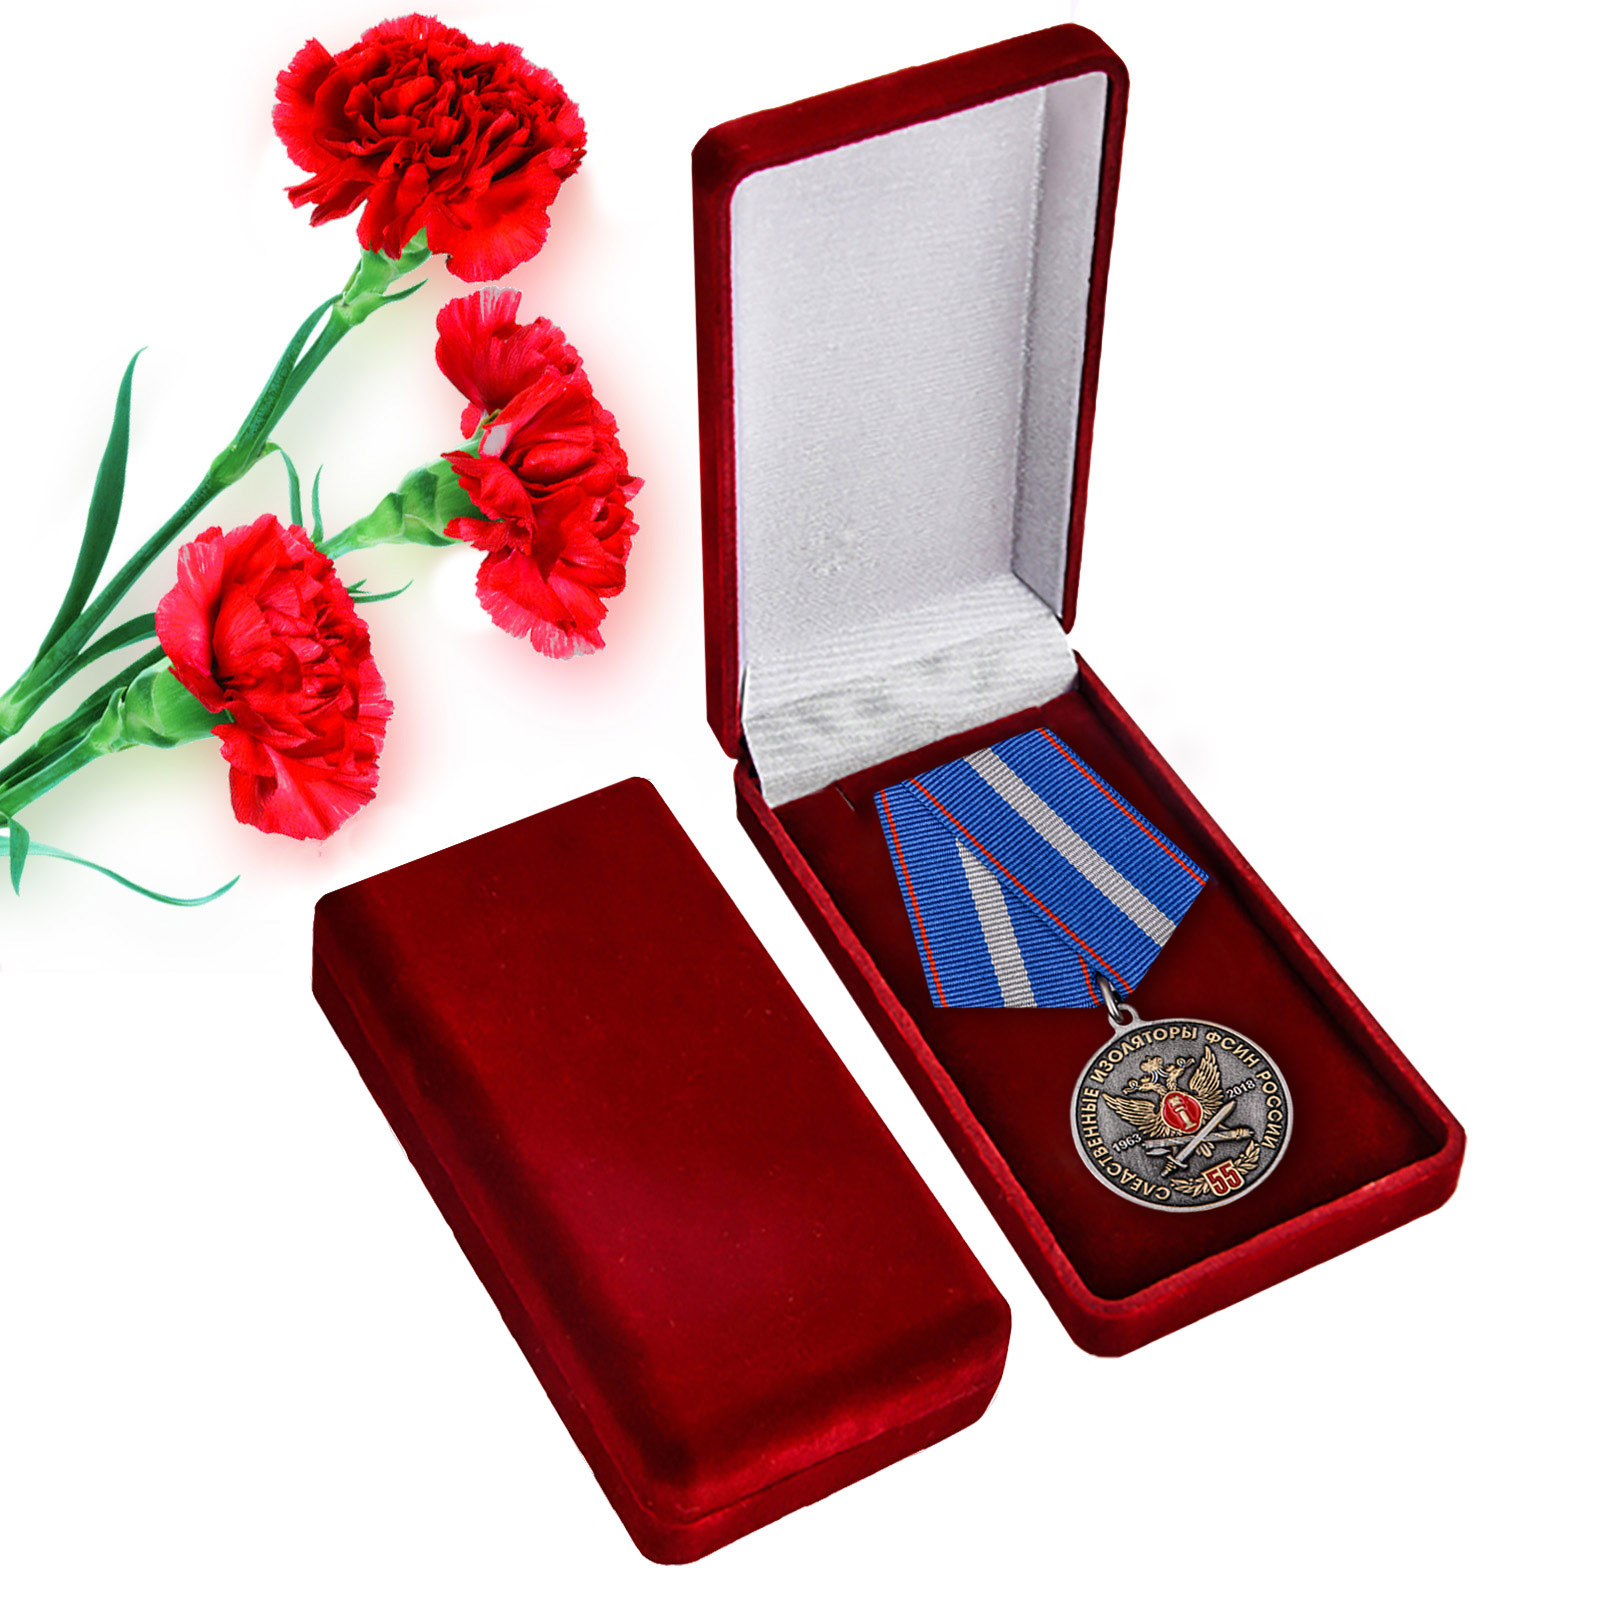 Купить памятную медаль 55 лет Следственным изоляторам ФСИН России с доставкой